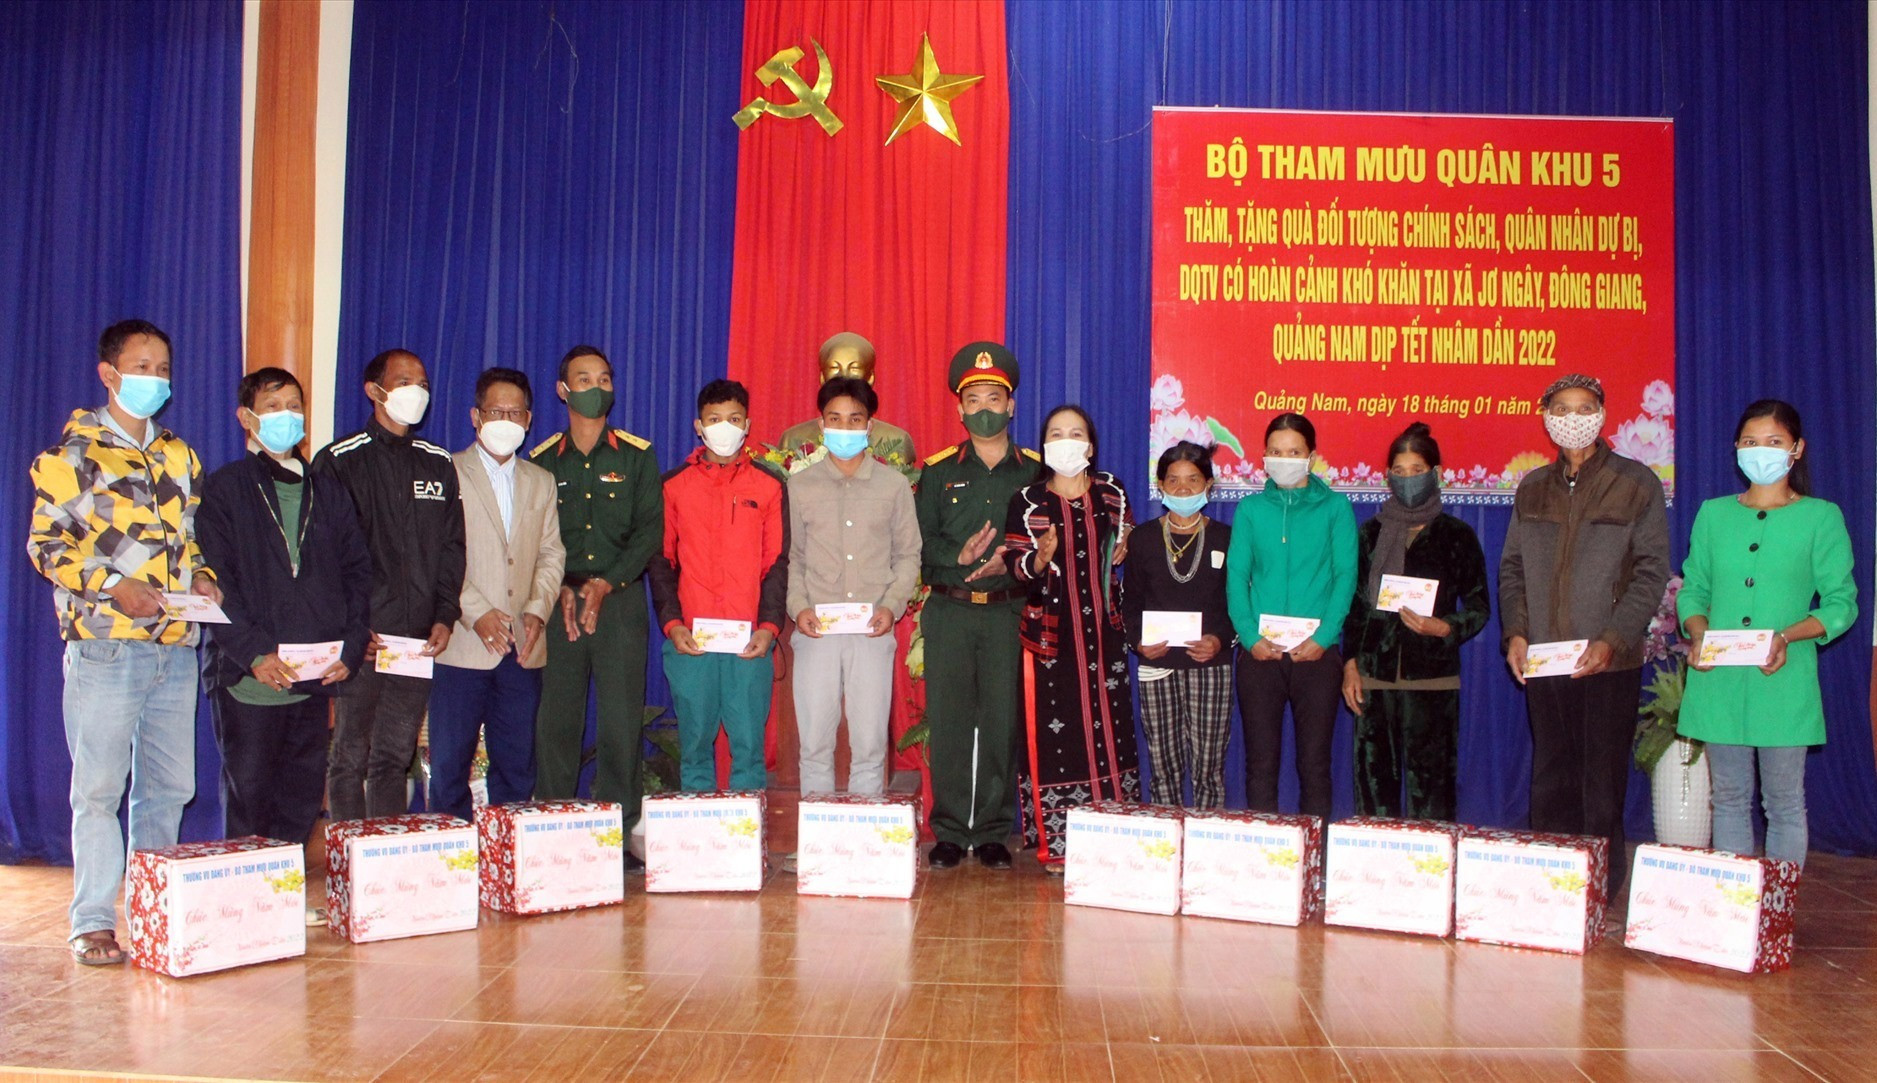 Đại tá Lê Xuân Đông, Chủ nhiệm chính trị Bộ Tham mưu Quân khu 5 tặng quà Tết cho người dân trên địa bàn xã.